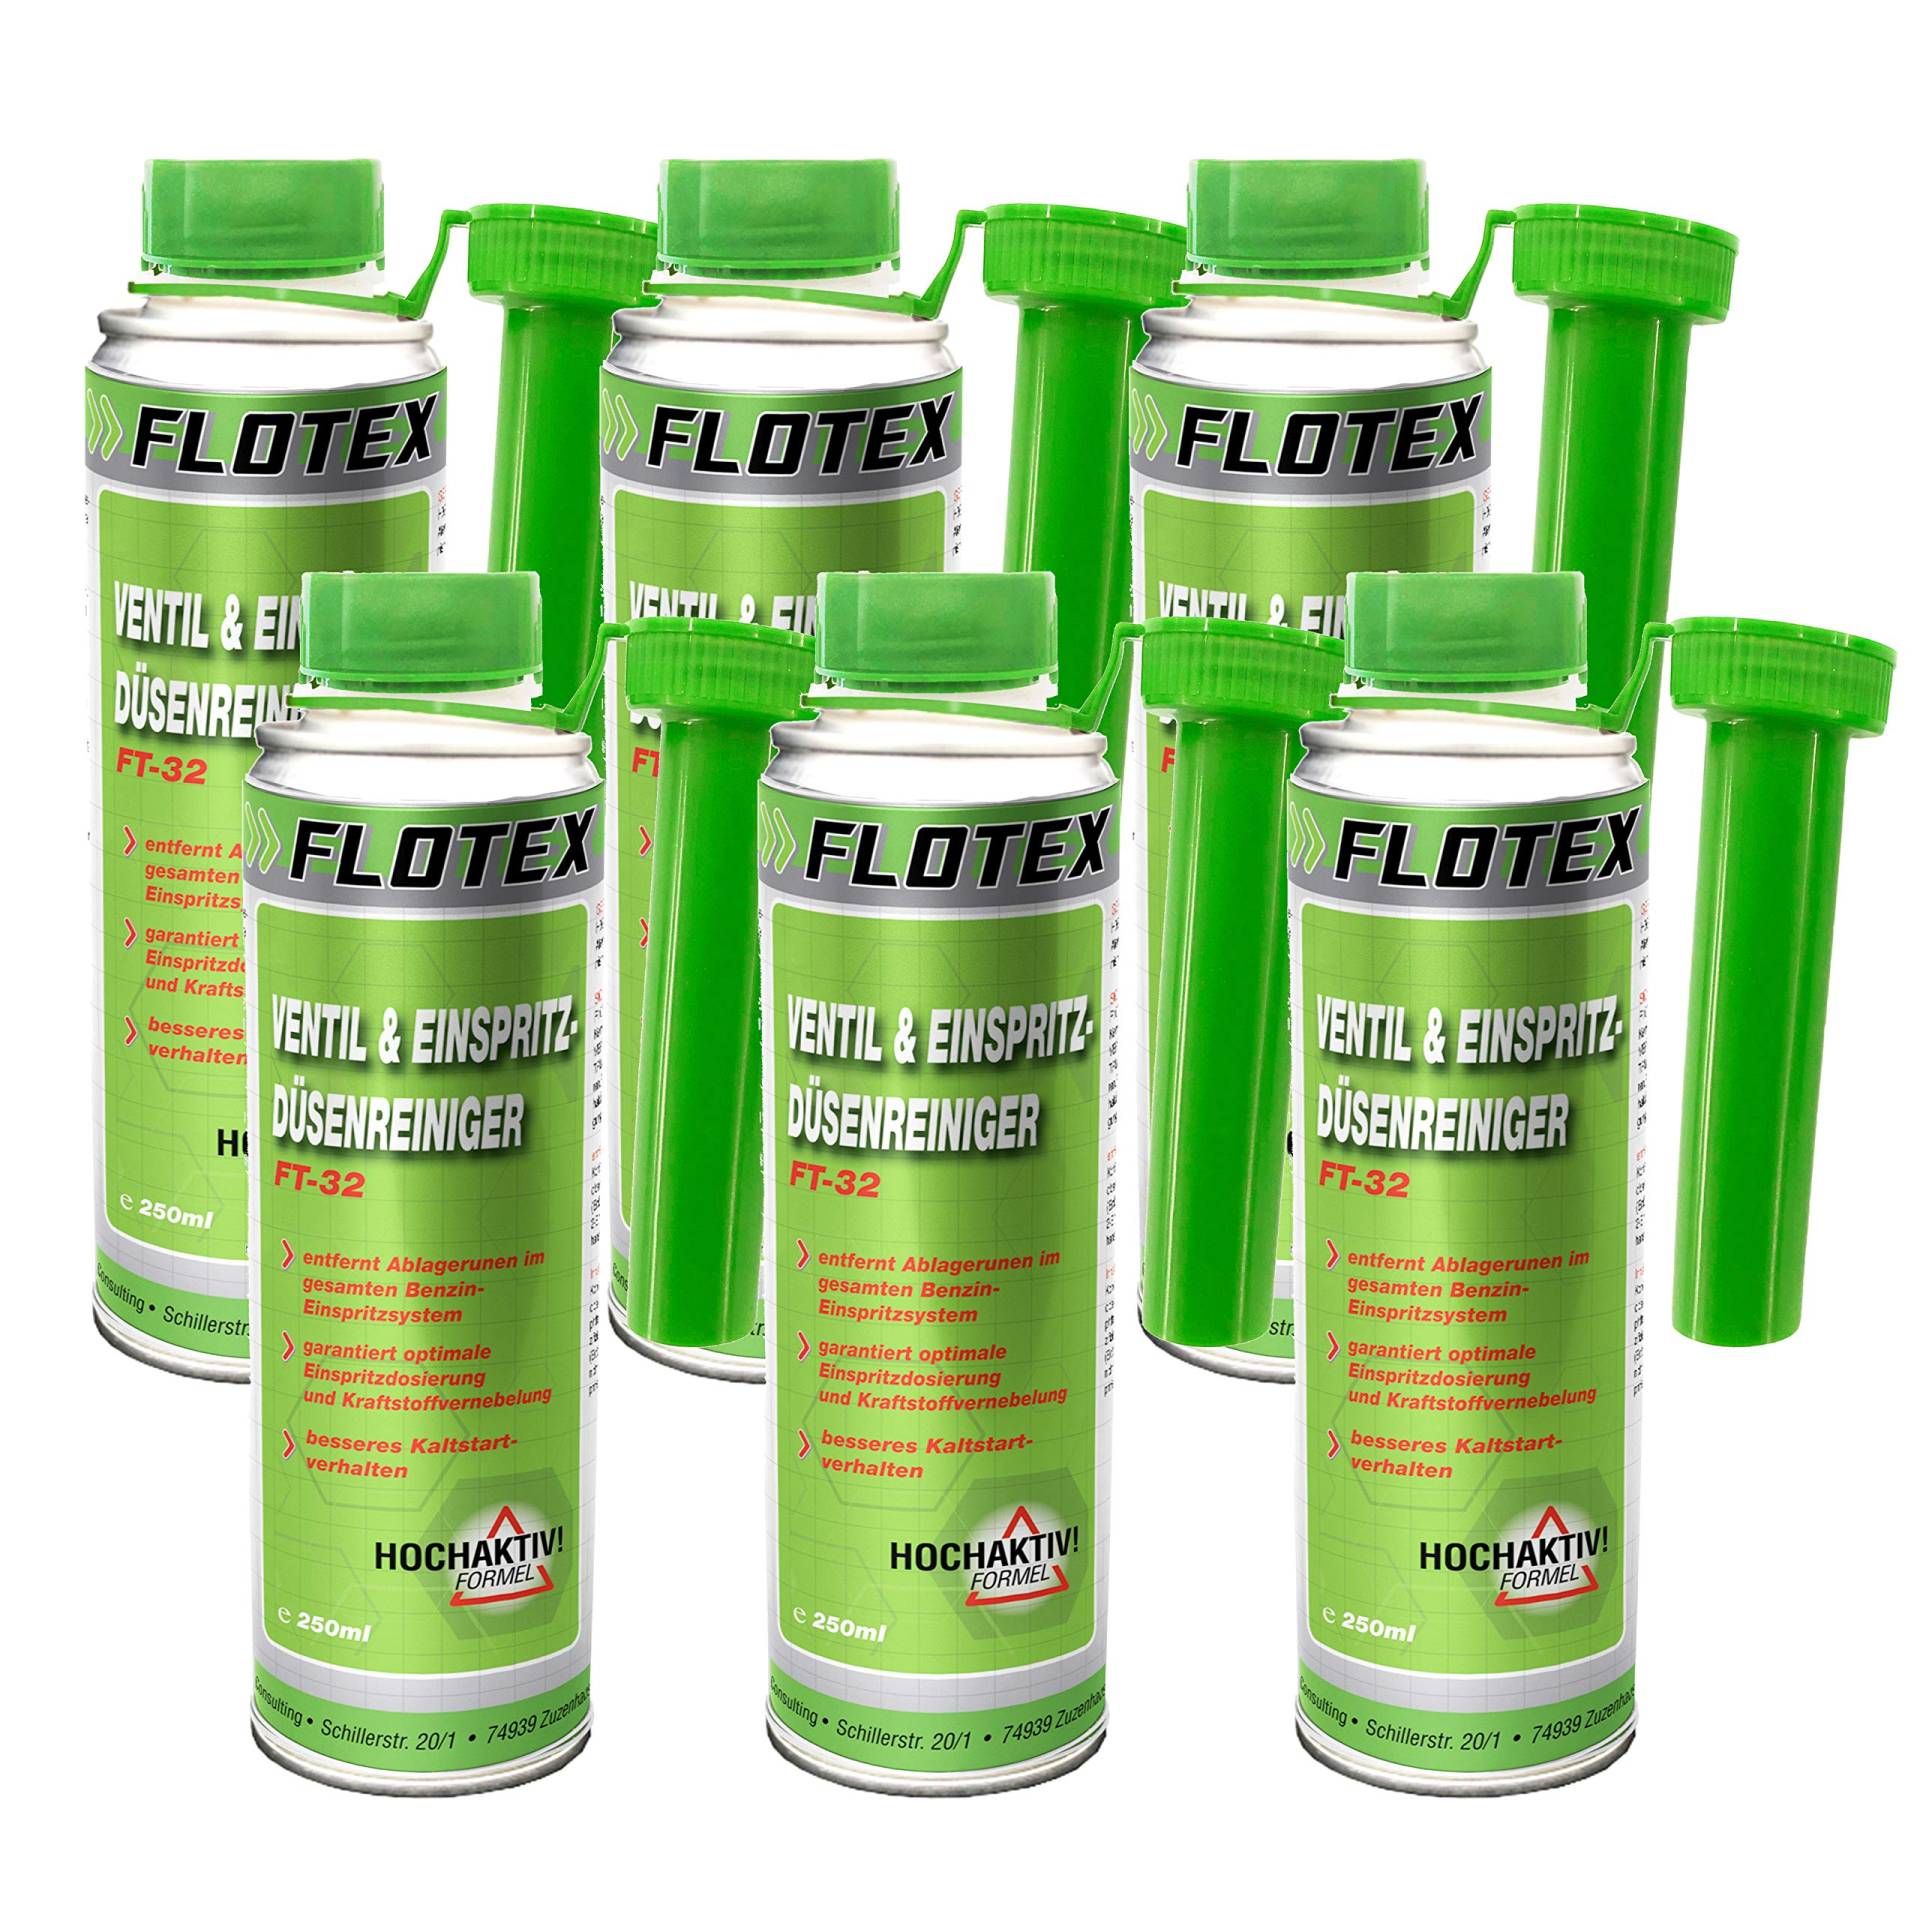 Flotex Ventil & Einspritzdüsenreiniger, 6 x 250ml Additiv entfernt Ablagerungen und reinigt Benzin Einspritzsystem von Flotex